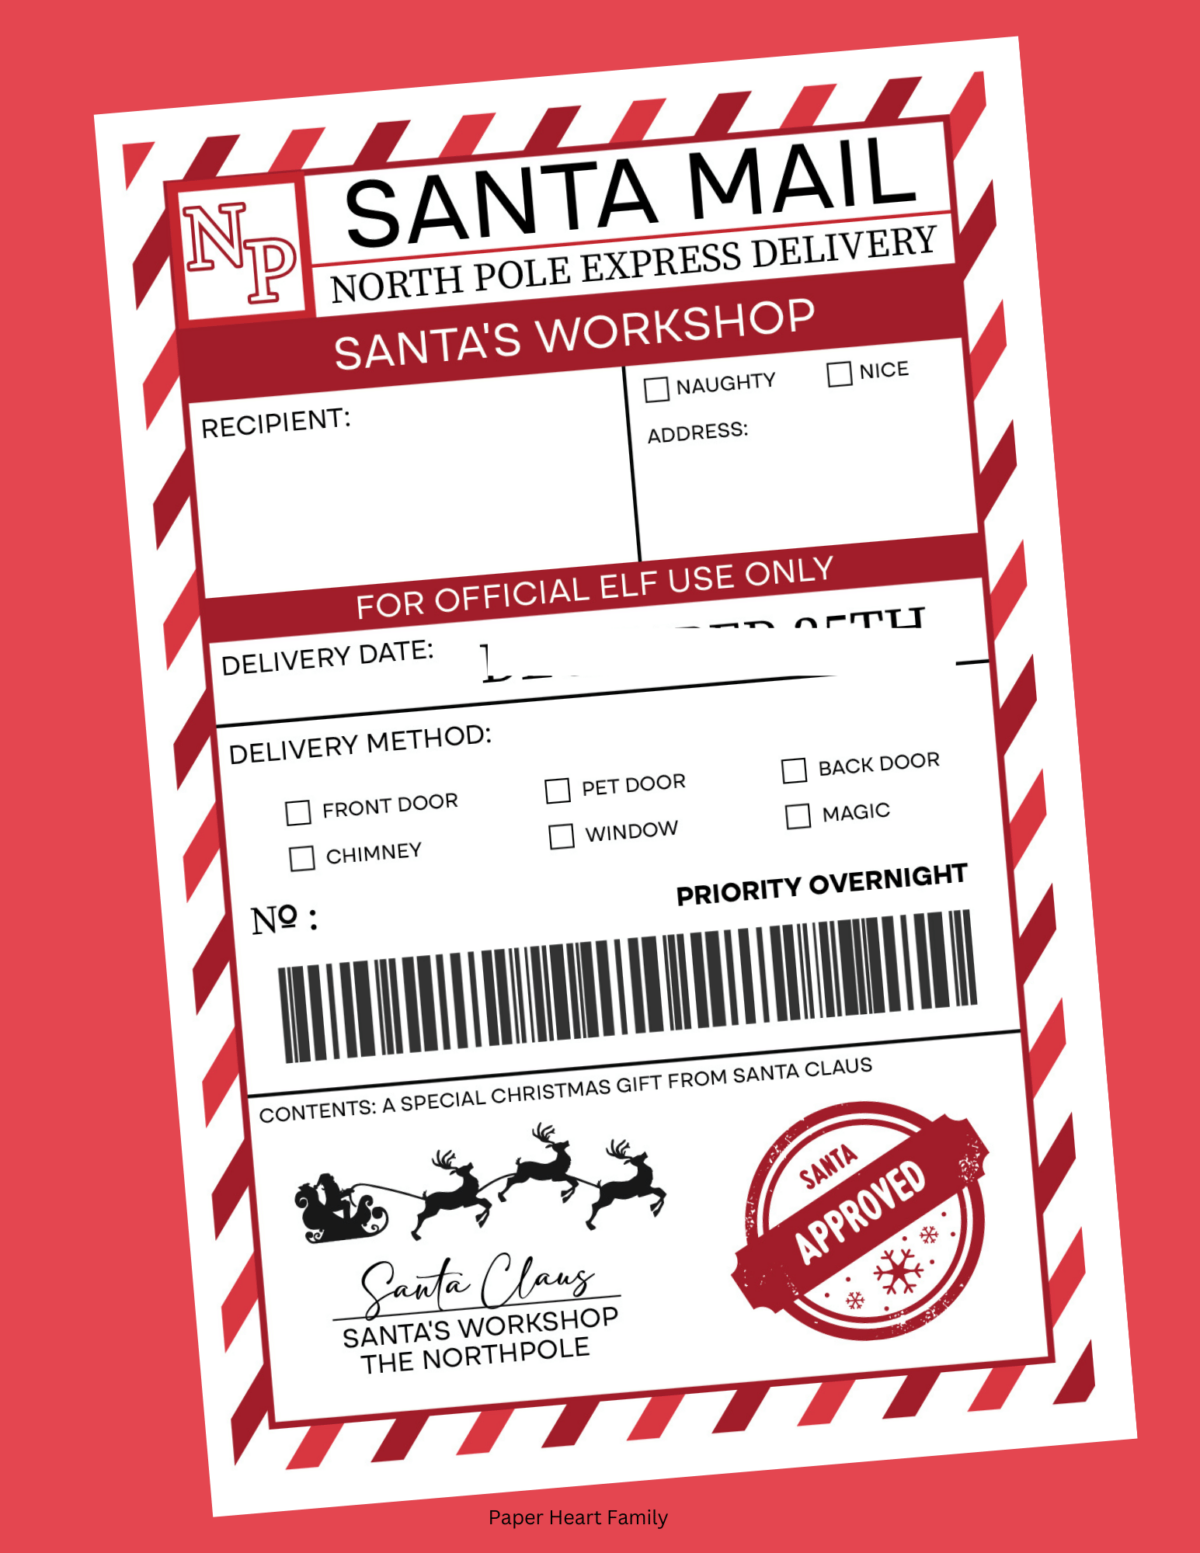 Printable label that says "Santa Mail"